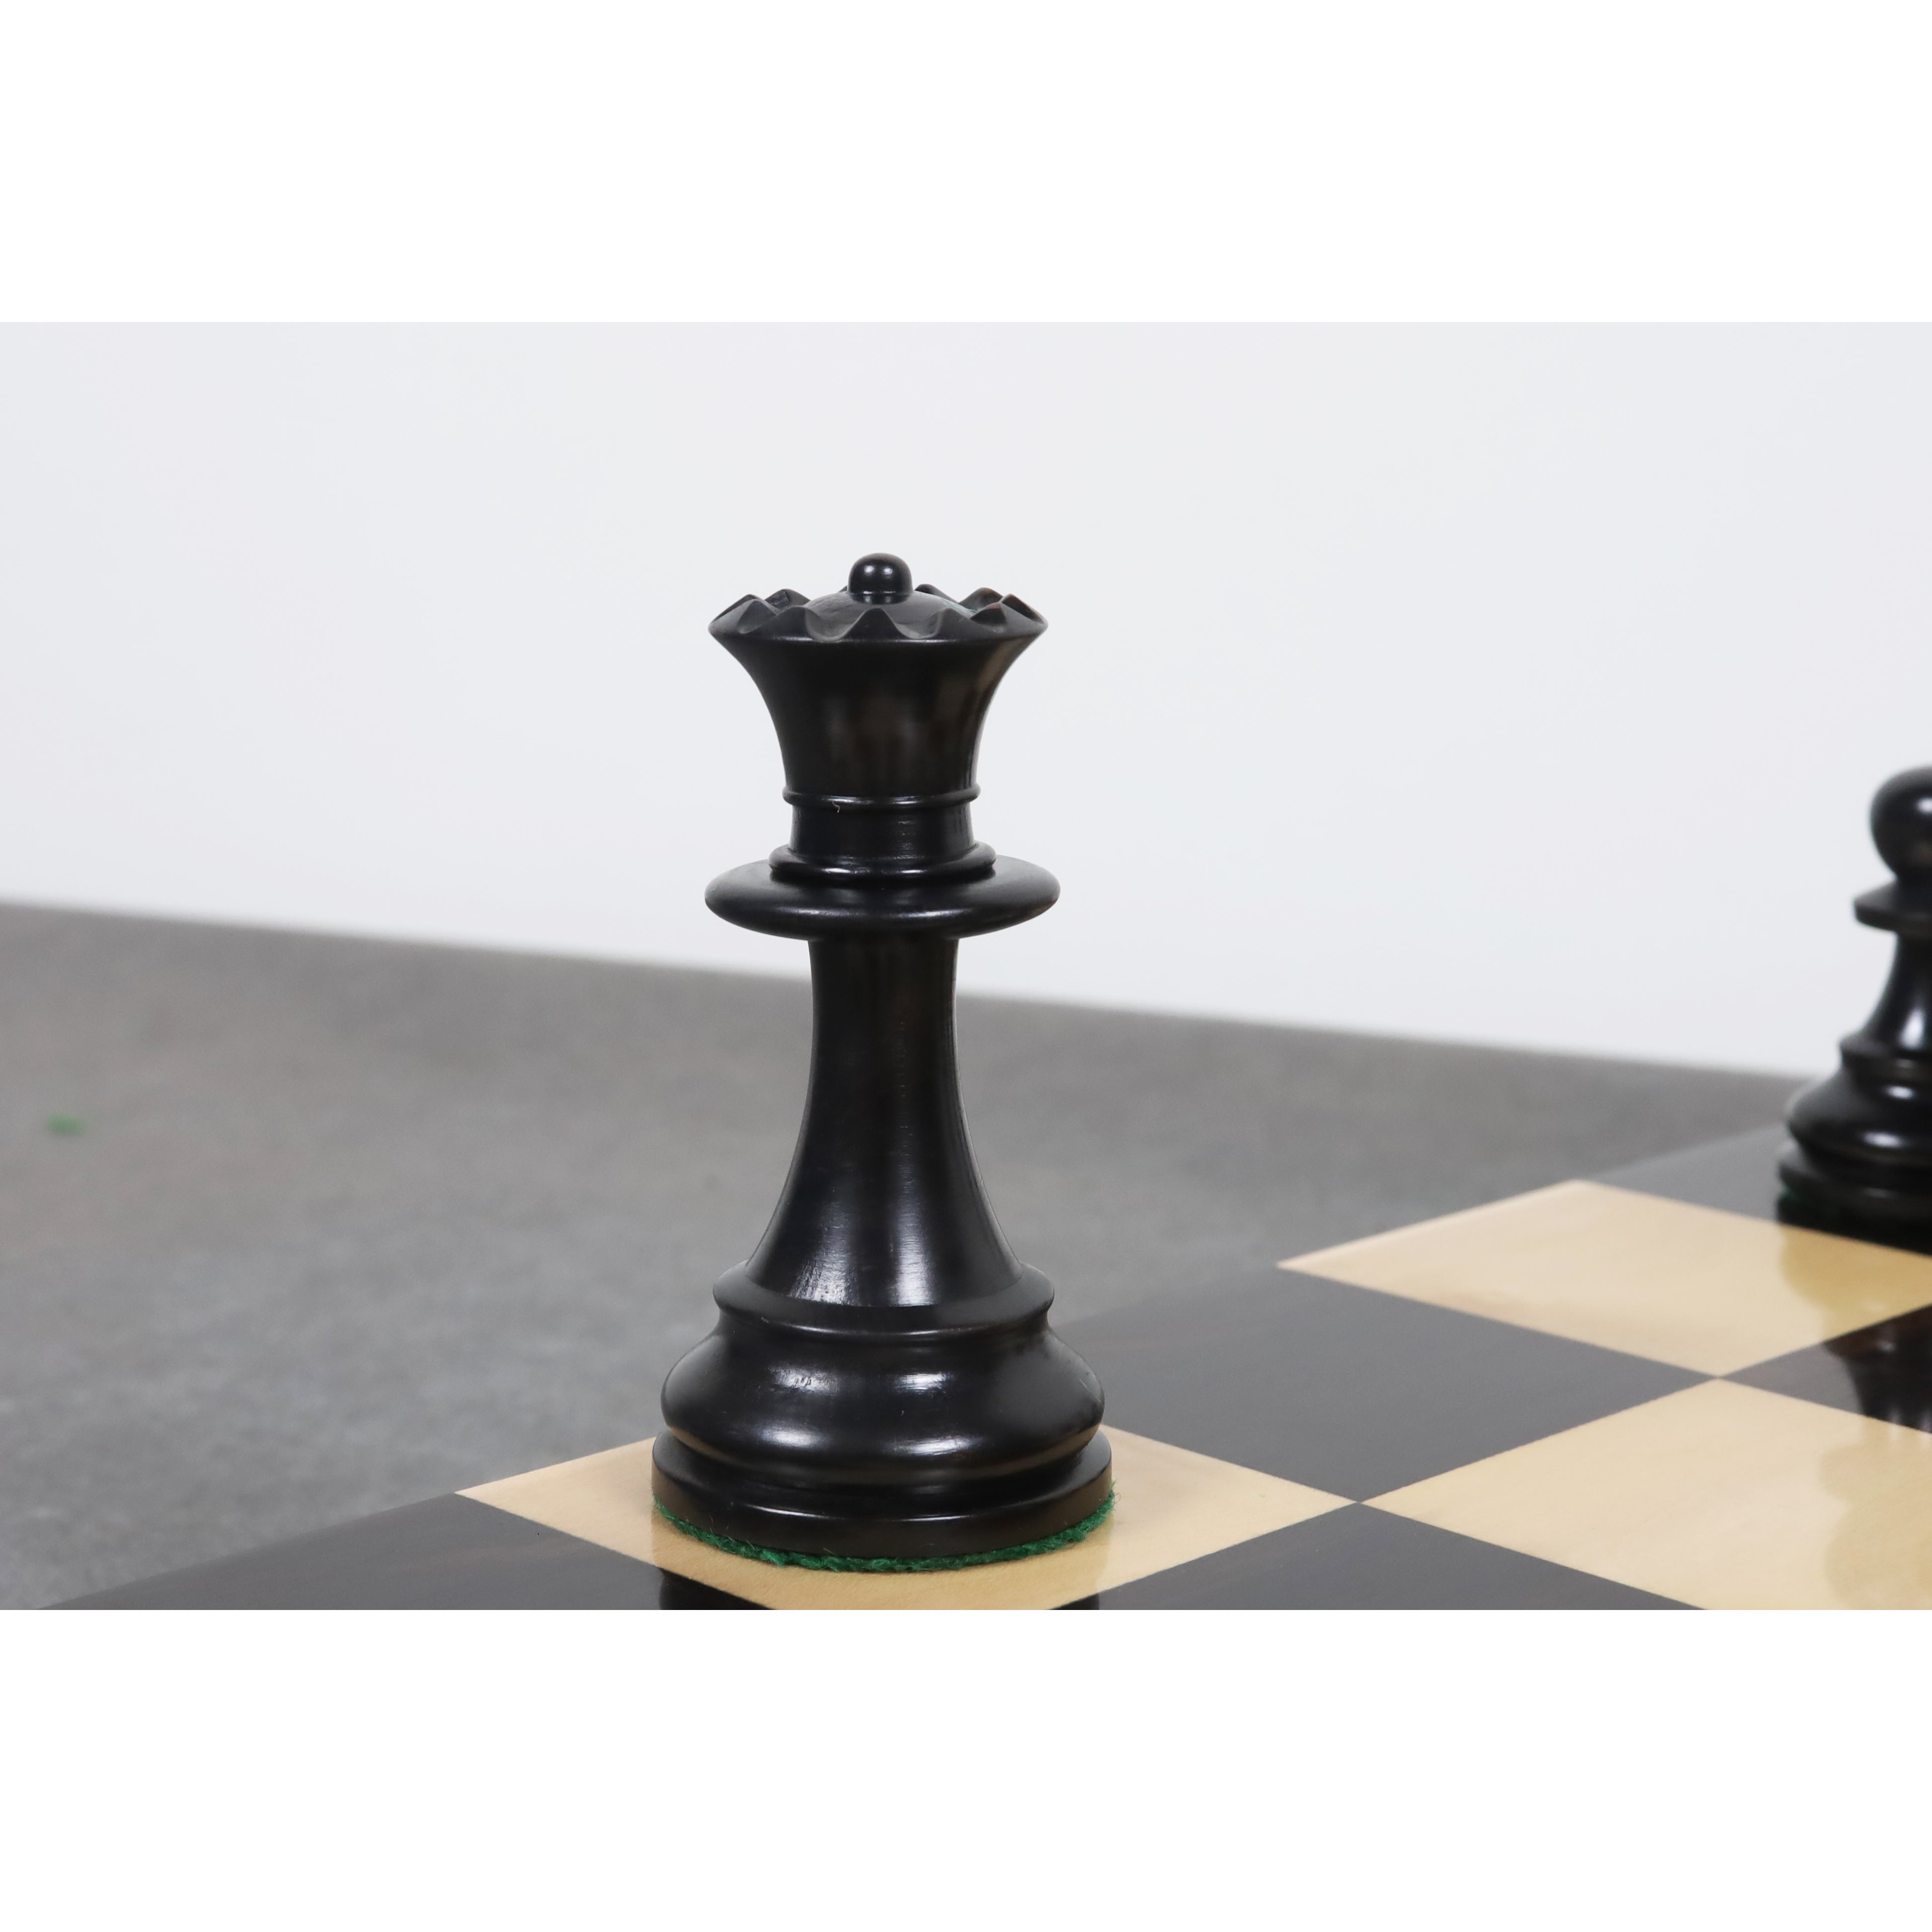 16 Kasparov Champion Folding Chess Set